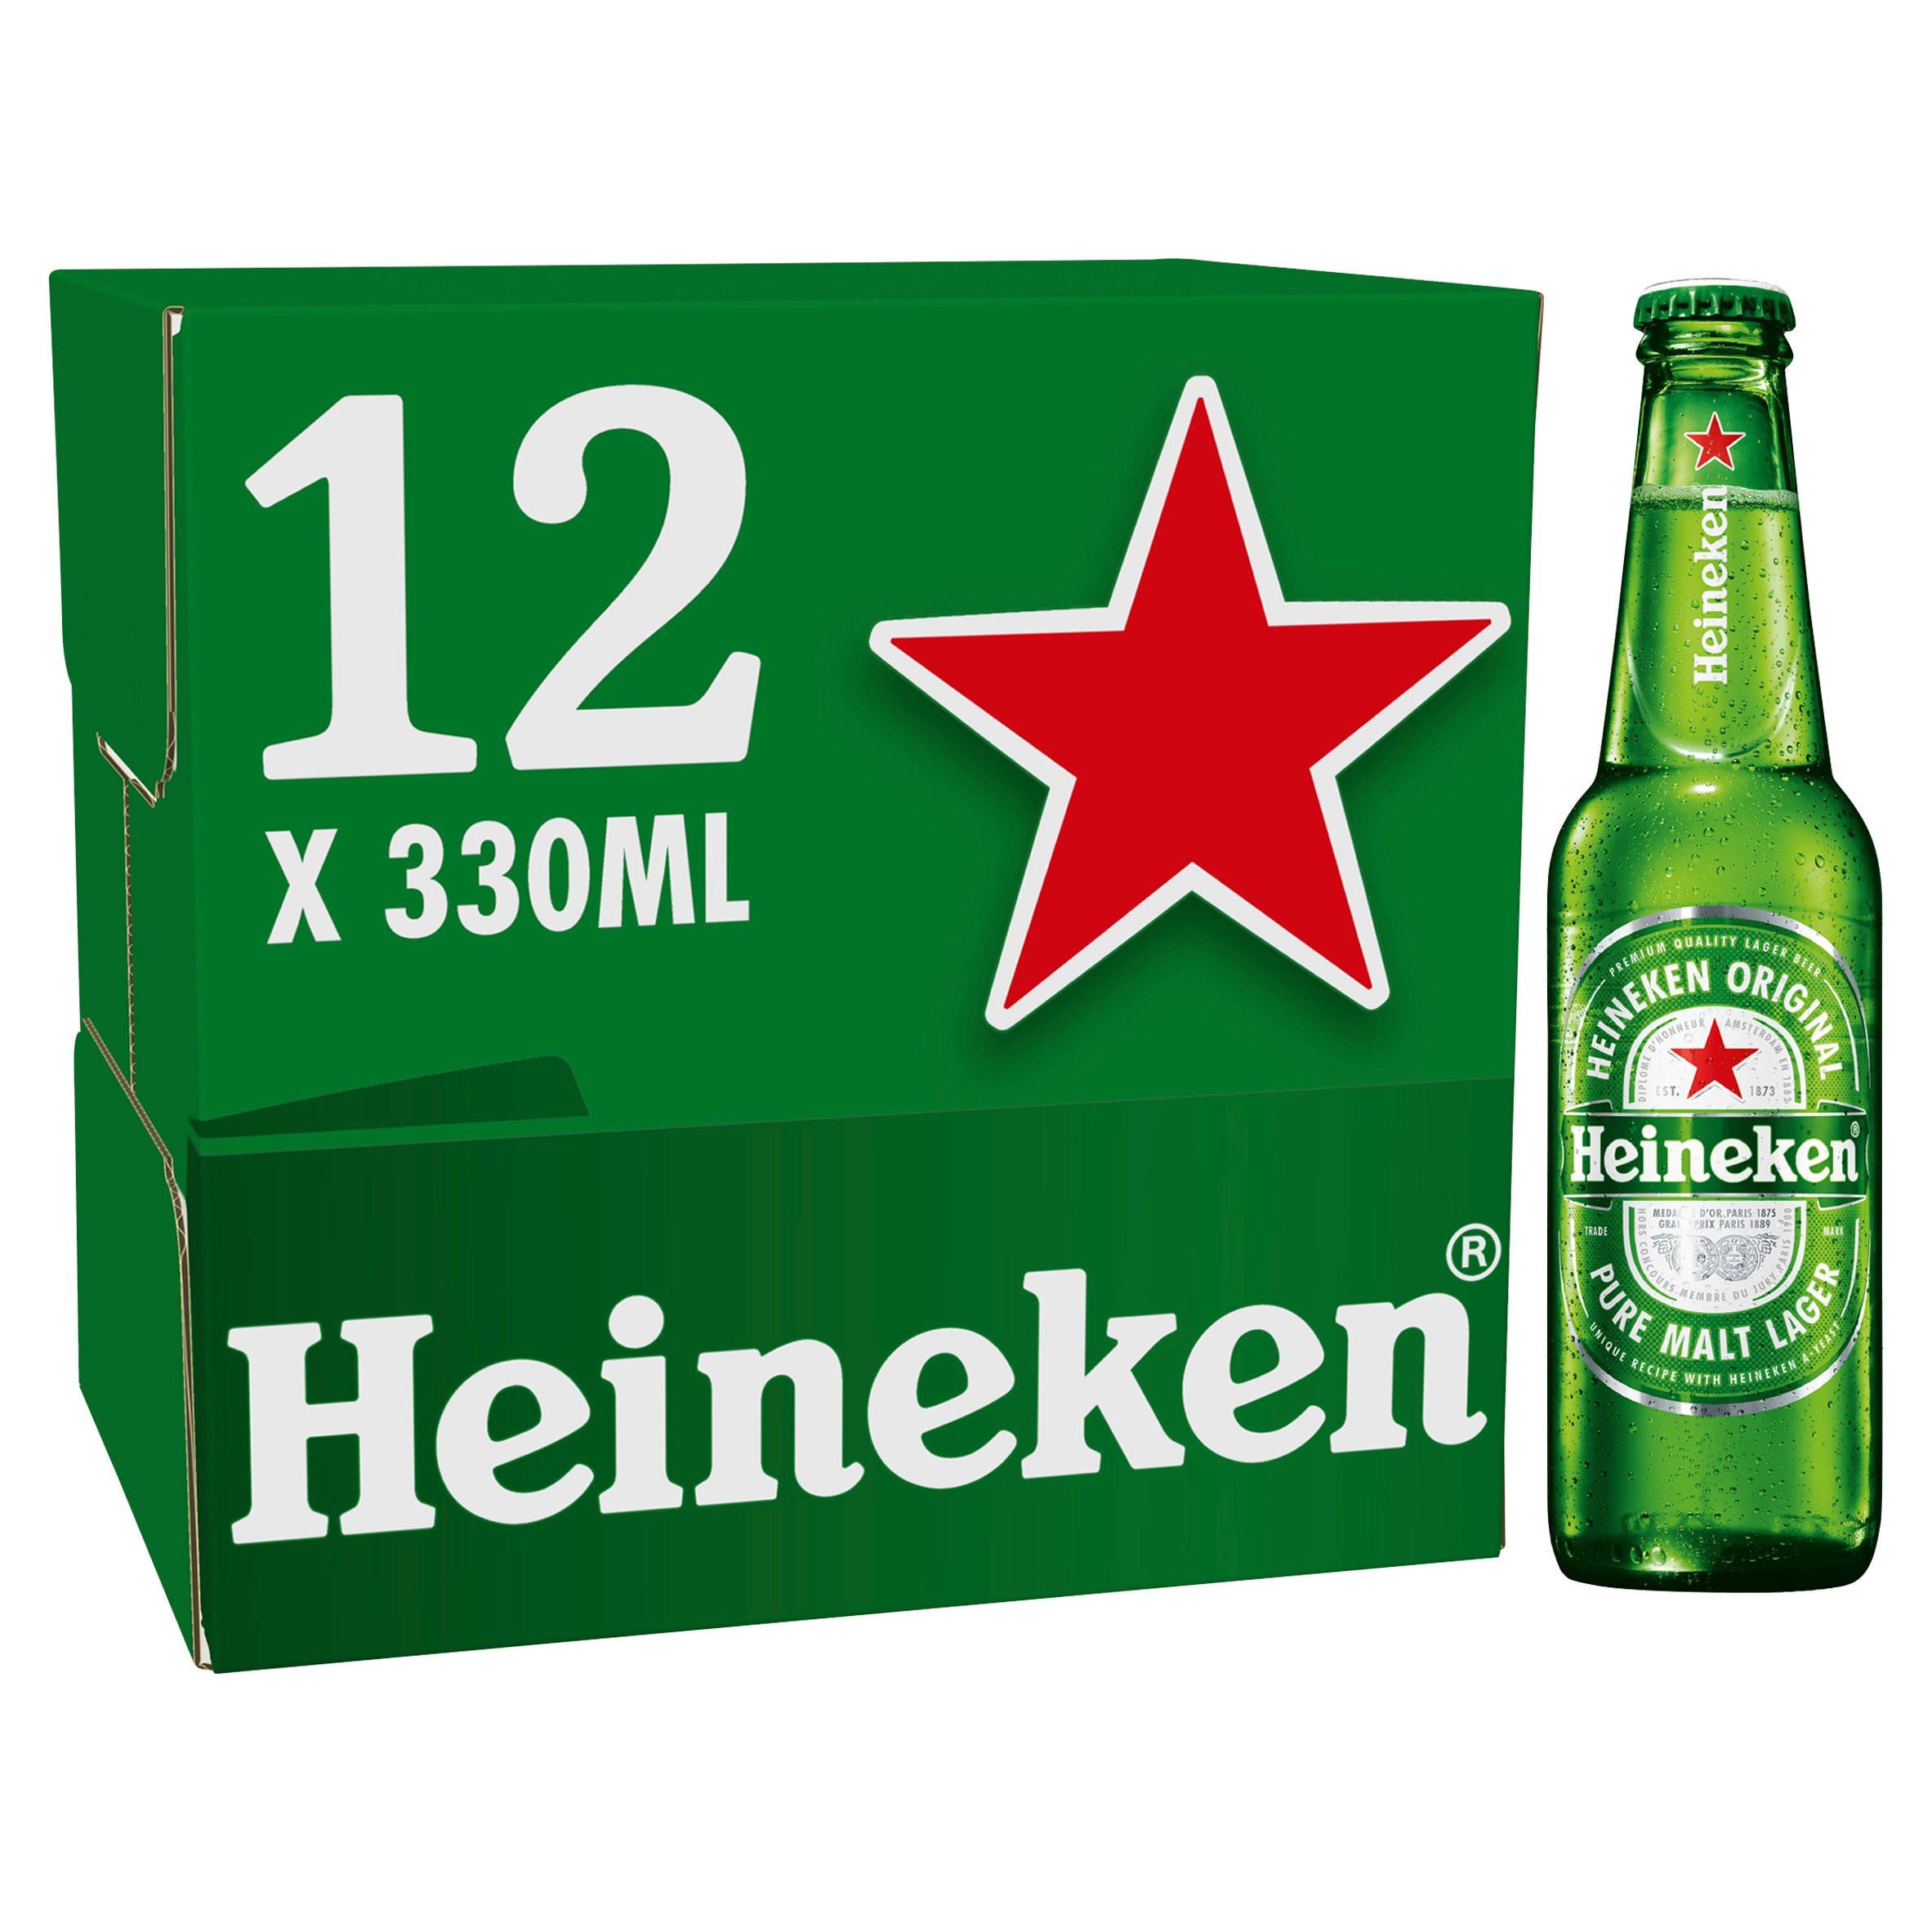 อันดับหนึ่ง 97+ ภาพพื้นหลัง เพลง ประกอบ โฆษณา Heineken อัปเดต